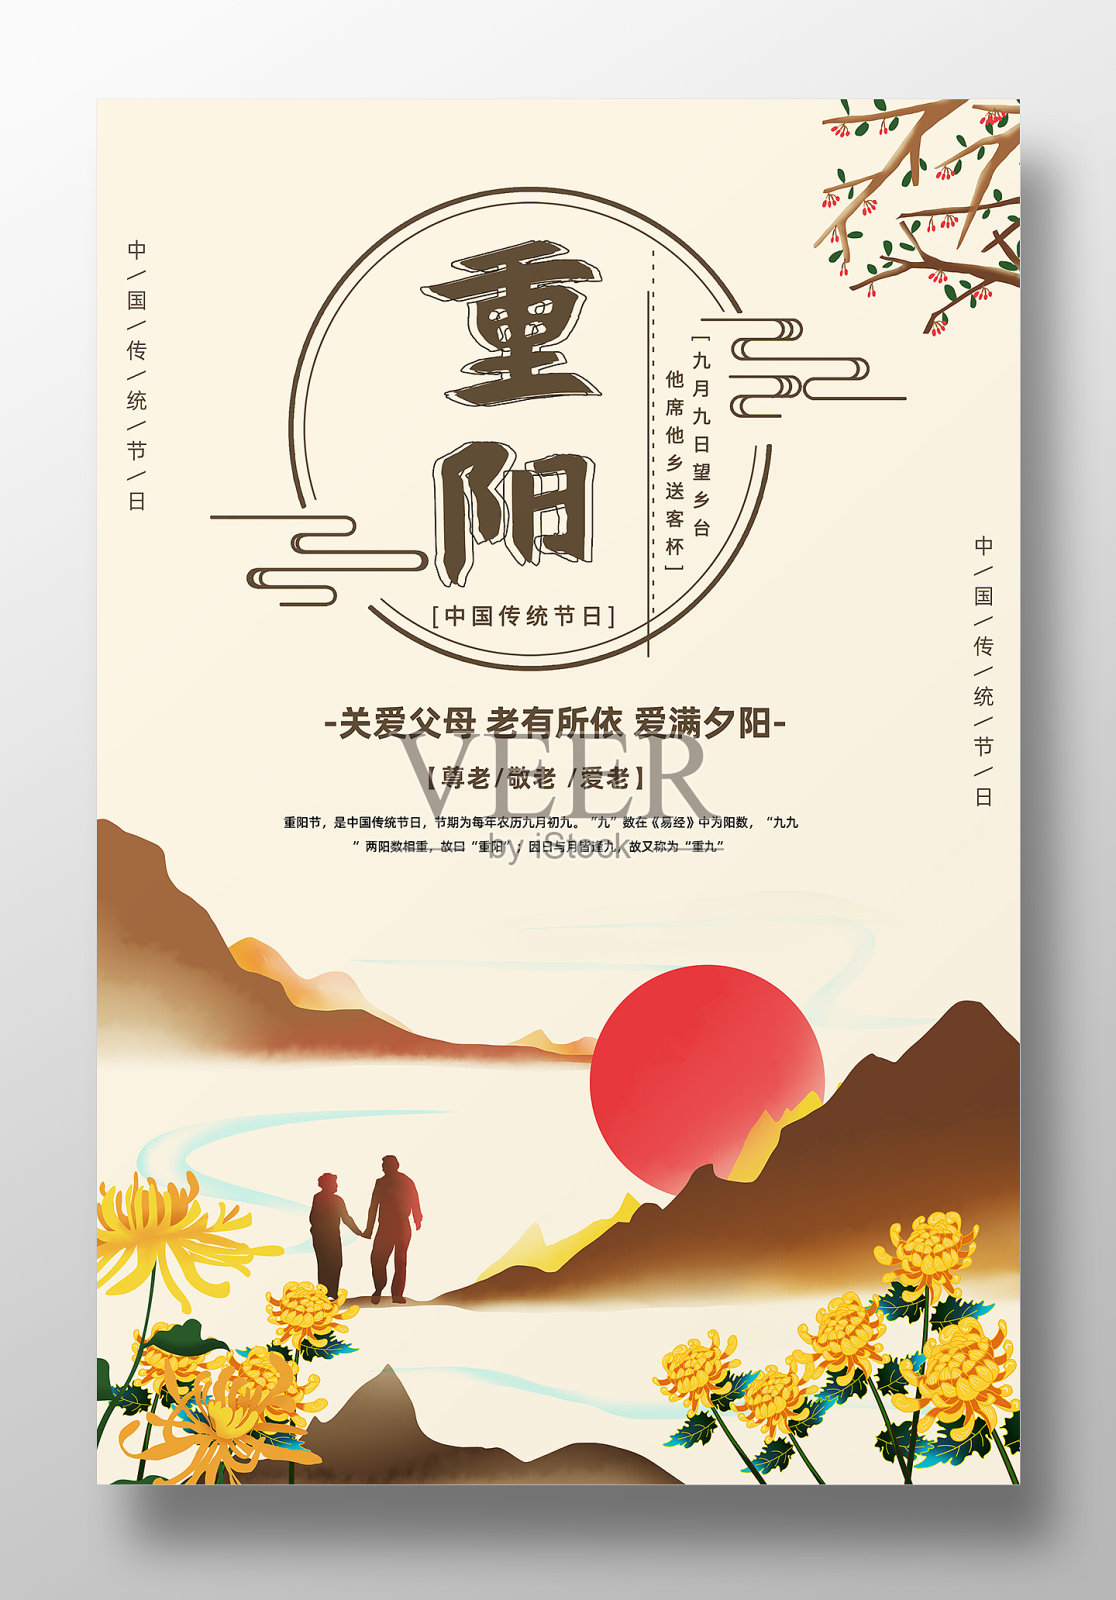 重阳节宣传海报设计模板素材